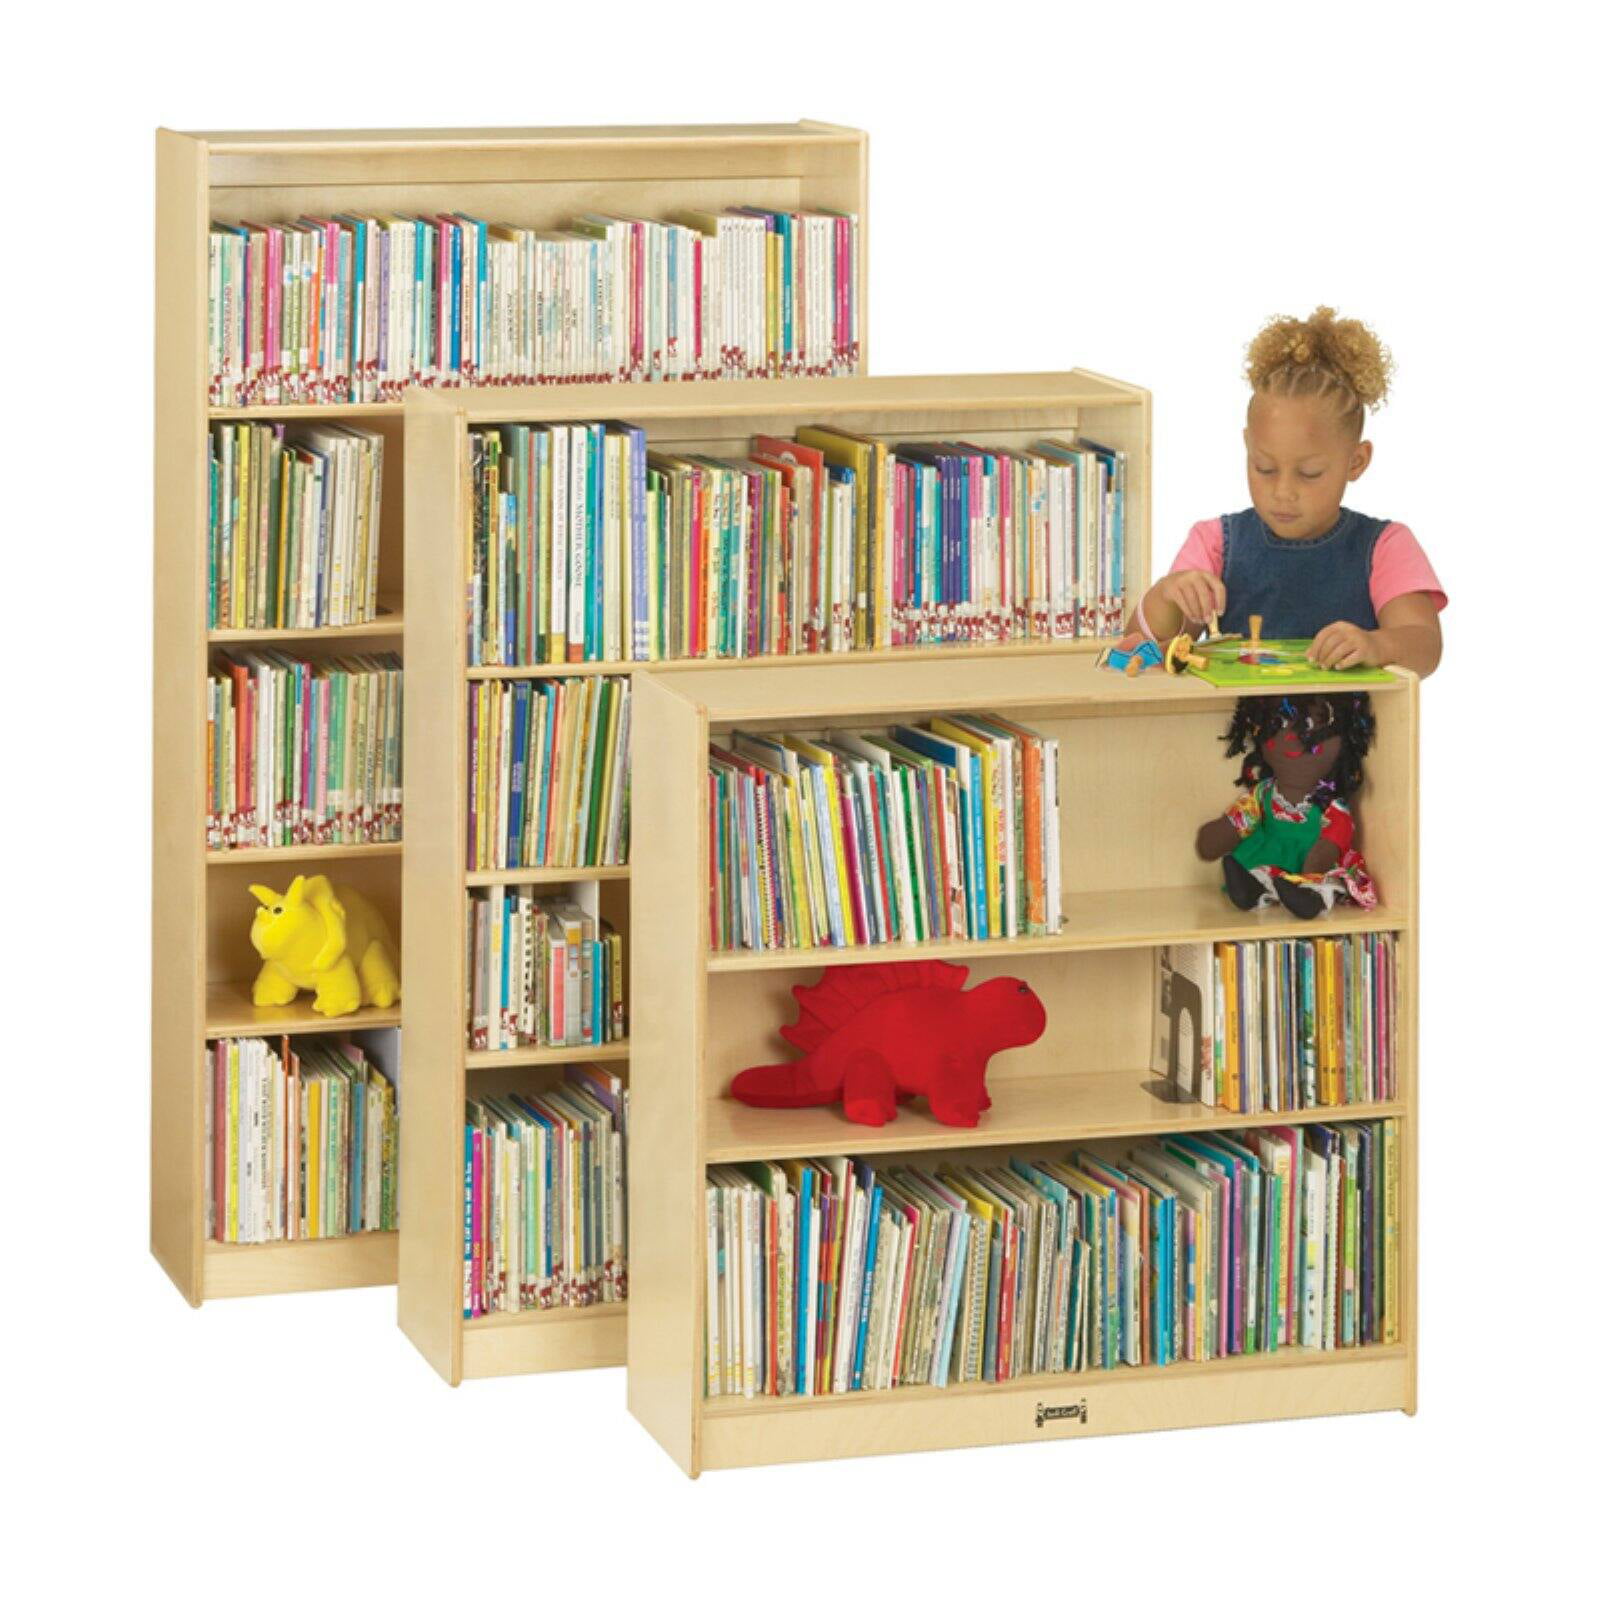 Adjustable Shelves Classroom Bookcase - Walmart.com - Walmart.com